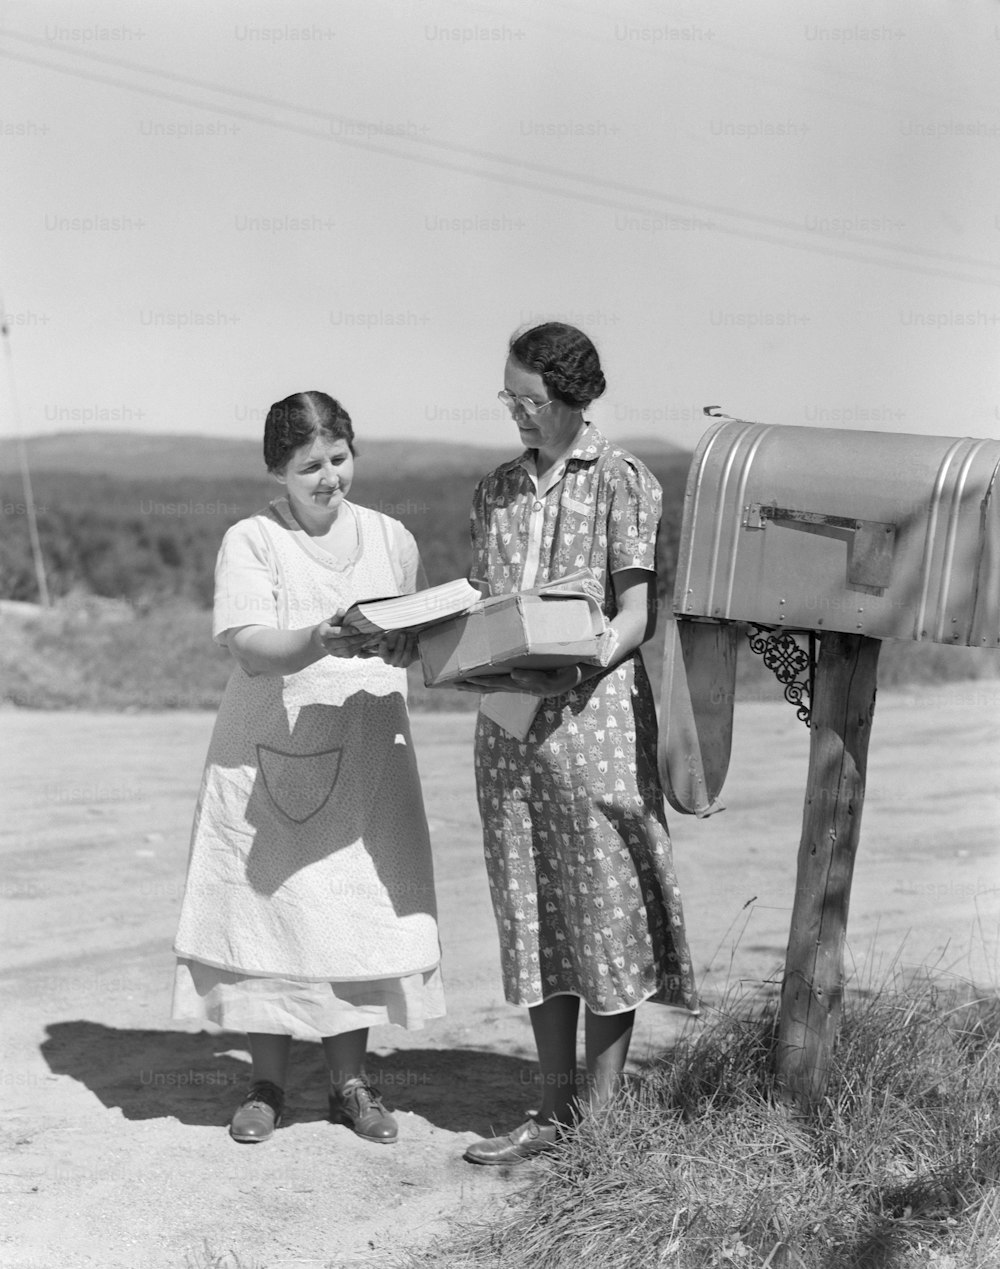 STATI UNITI - 1940 CIRCA: Due donne raccolgono la posta dalla cassetta postale del paese.